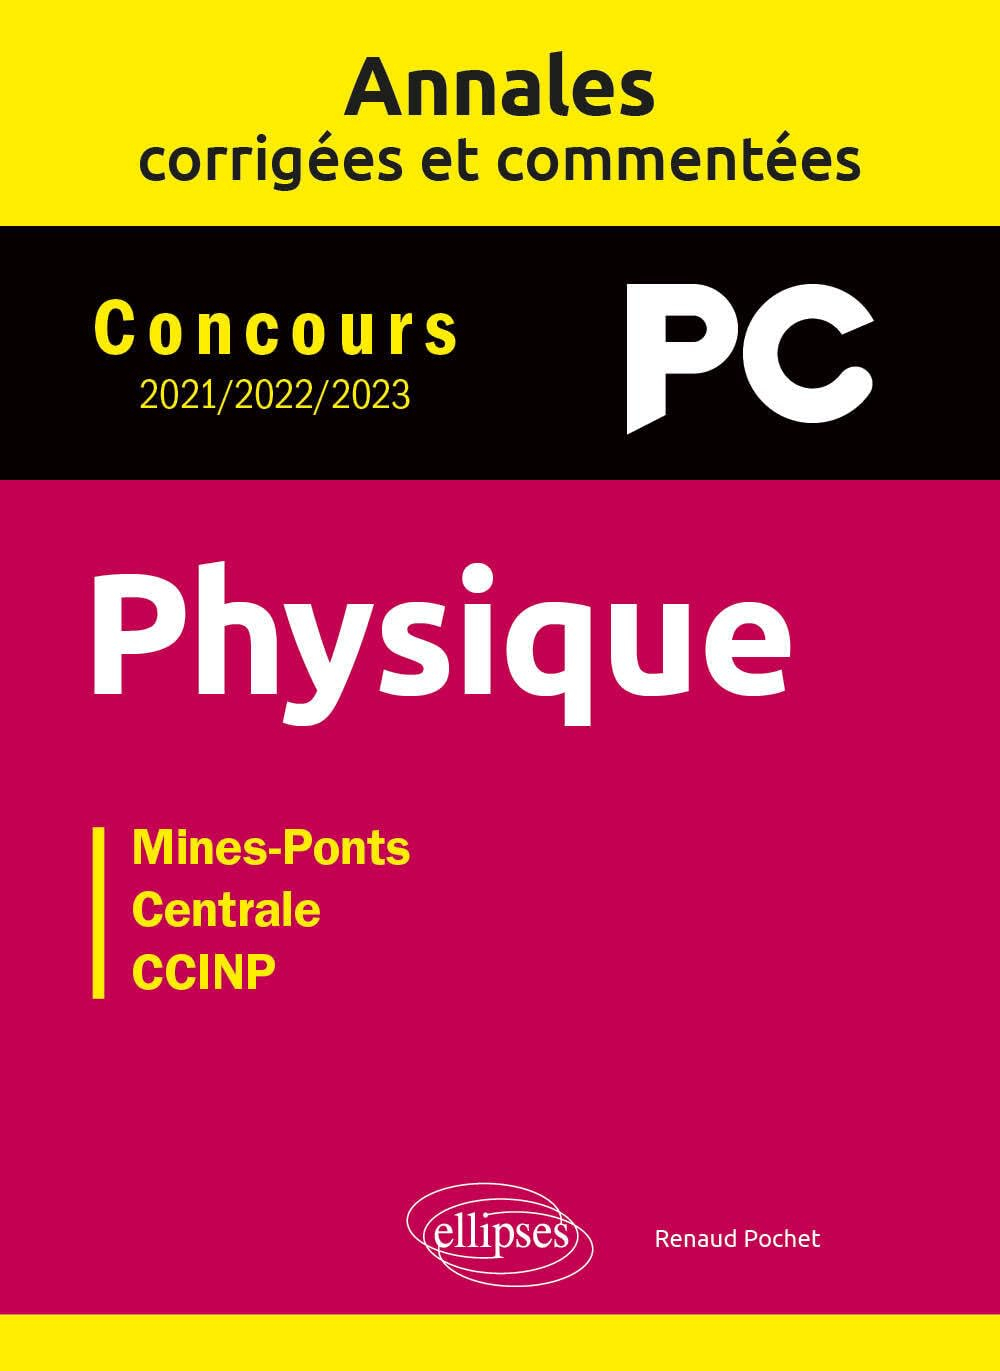 Physique PC : annales corrigées et commentées, concours 2021, 2022, 2023 : Mines-Ponts, Centrale, CC